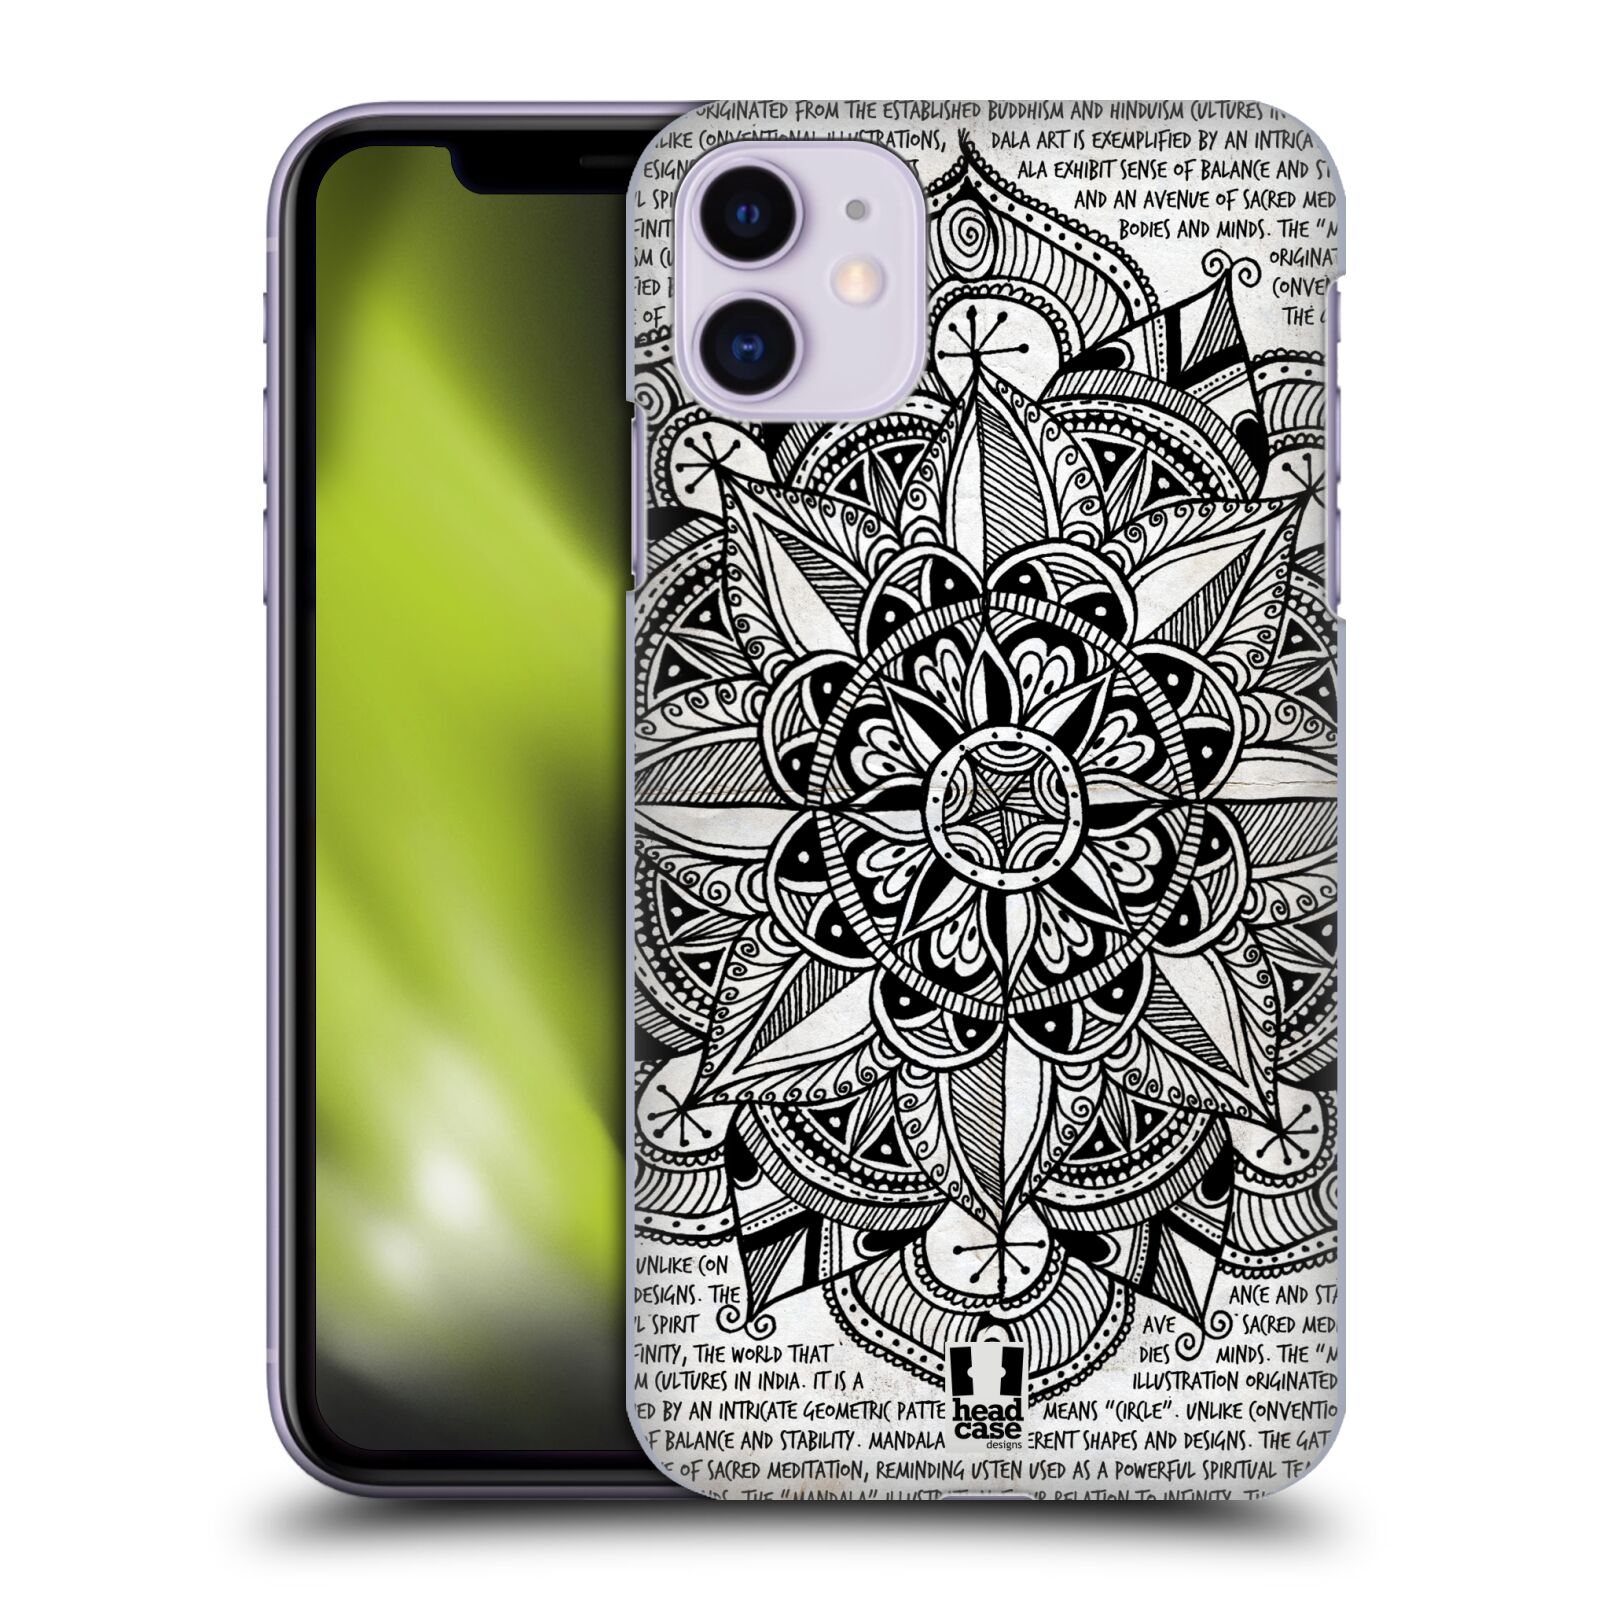 Pouzdro na mobil Apple Iphone 11 - HEAD CASE - vzor Indie Mandala slunce barevná ČERNÁ A BÍLÁ MAPA